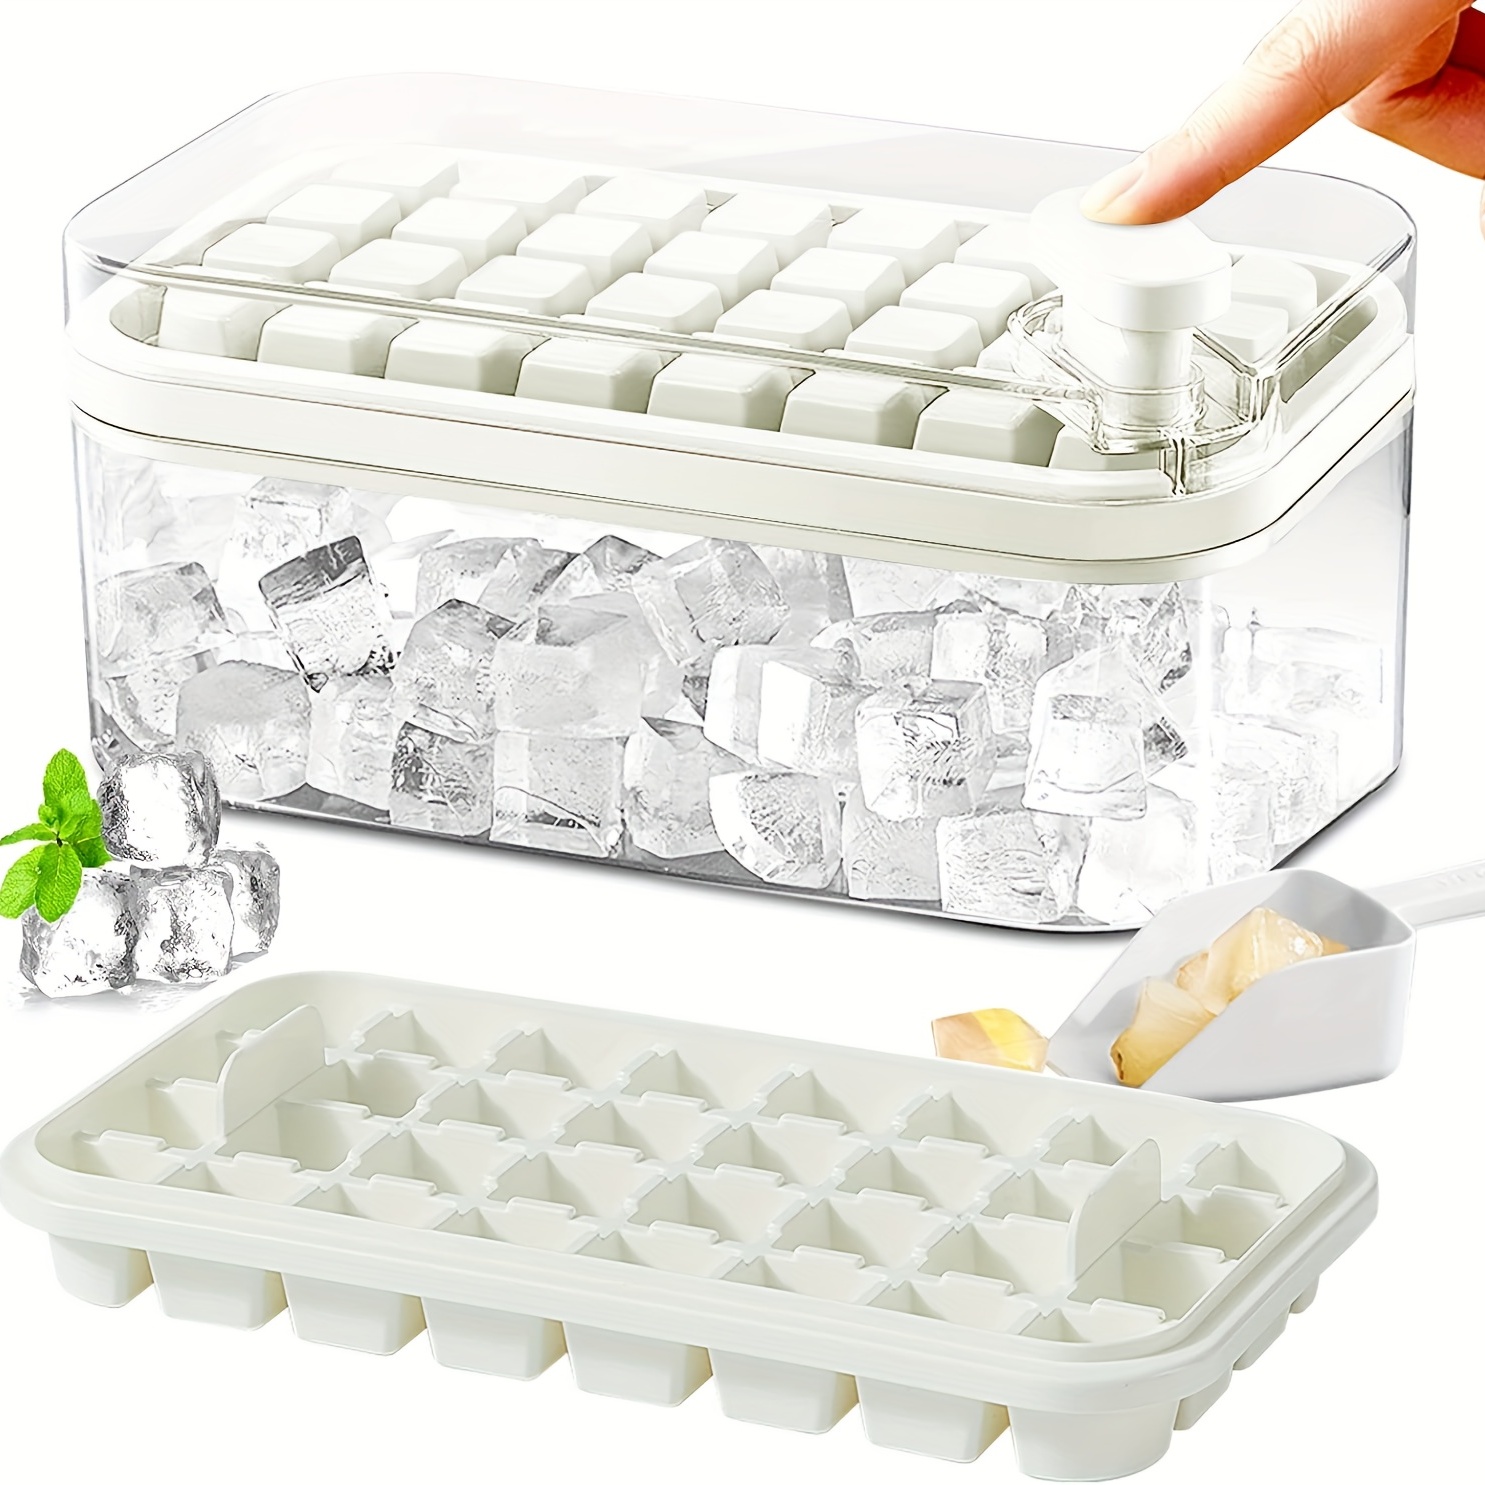 Лоток для кубиков льда с крышкой и контейнером, лотки для кубиков льда из 2 упаковок для морозильной камеры, форма для кубиков льда на 64 шт. (белая)